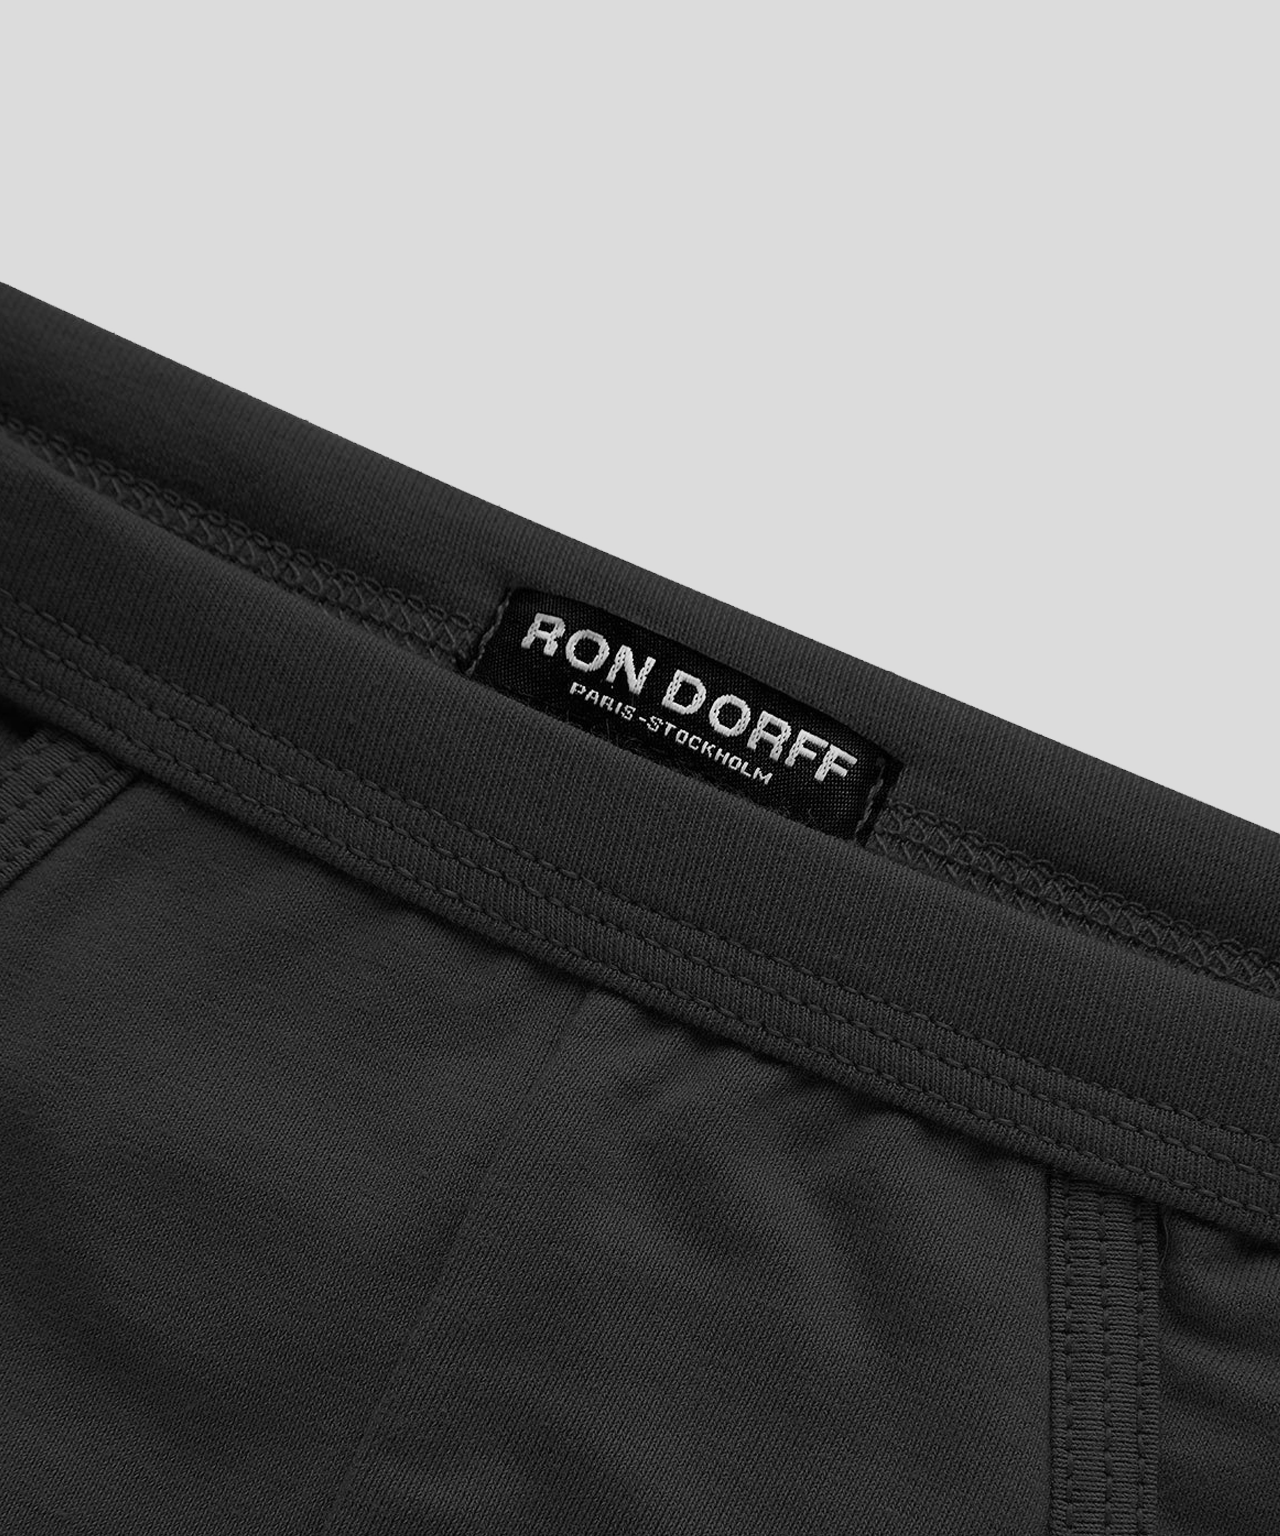 RON DORFF on X: Just in : Y-front briefs in dark navy mesh. #RonDorff  #Mesh #Underwear #YFrontBriefs @christianhogue @smiggi   / X